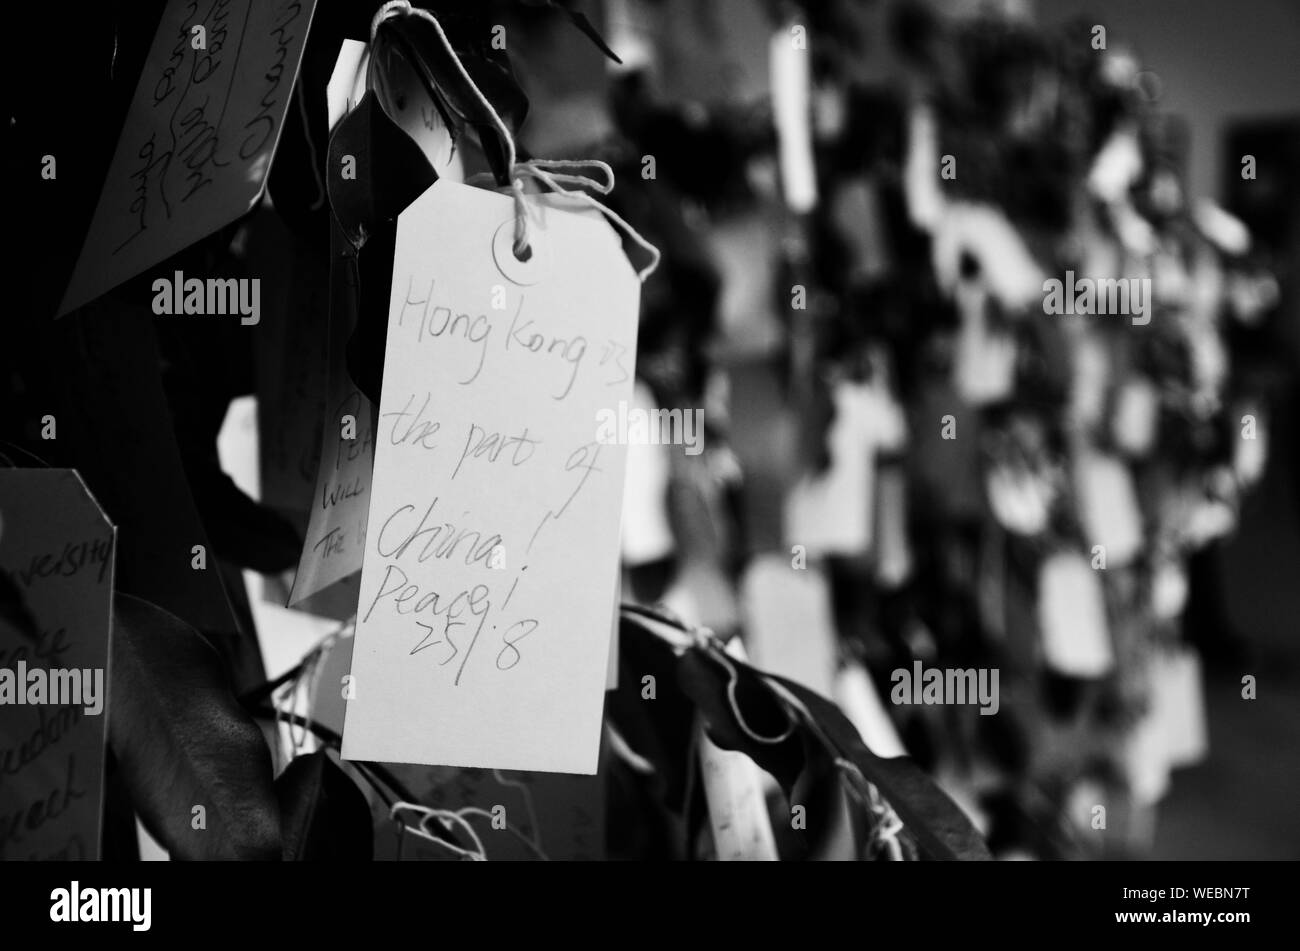 La paix à Hong Kong Chine - message écrit sur le souhait des arbres à Double Fantasy - John & Yoko exposition au Musée de Liverpool, Quayside, UK. Banque D'Images